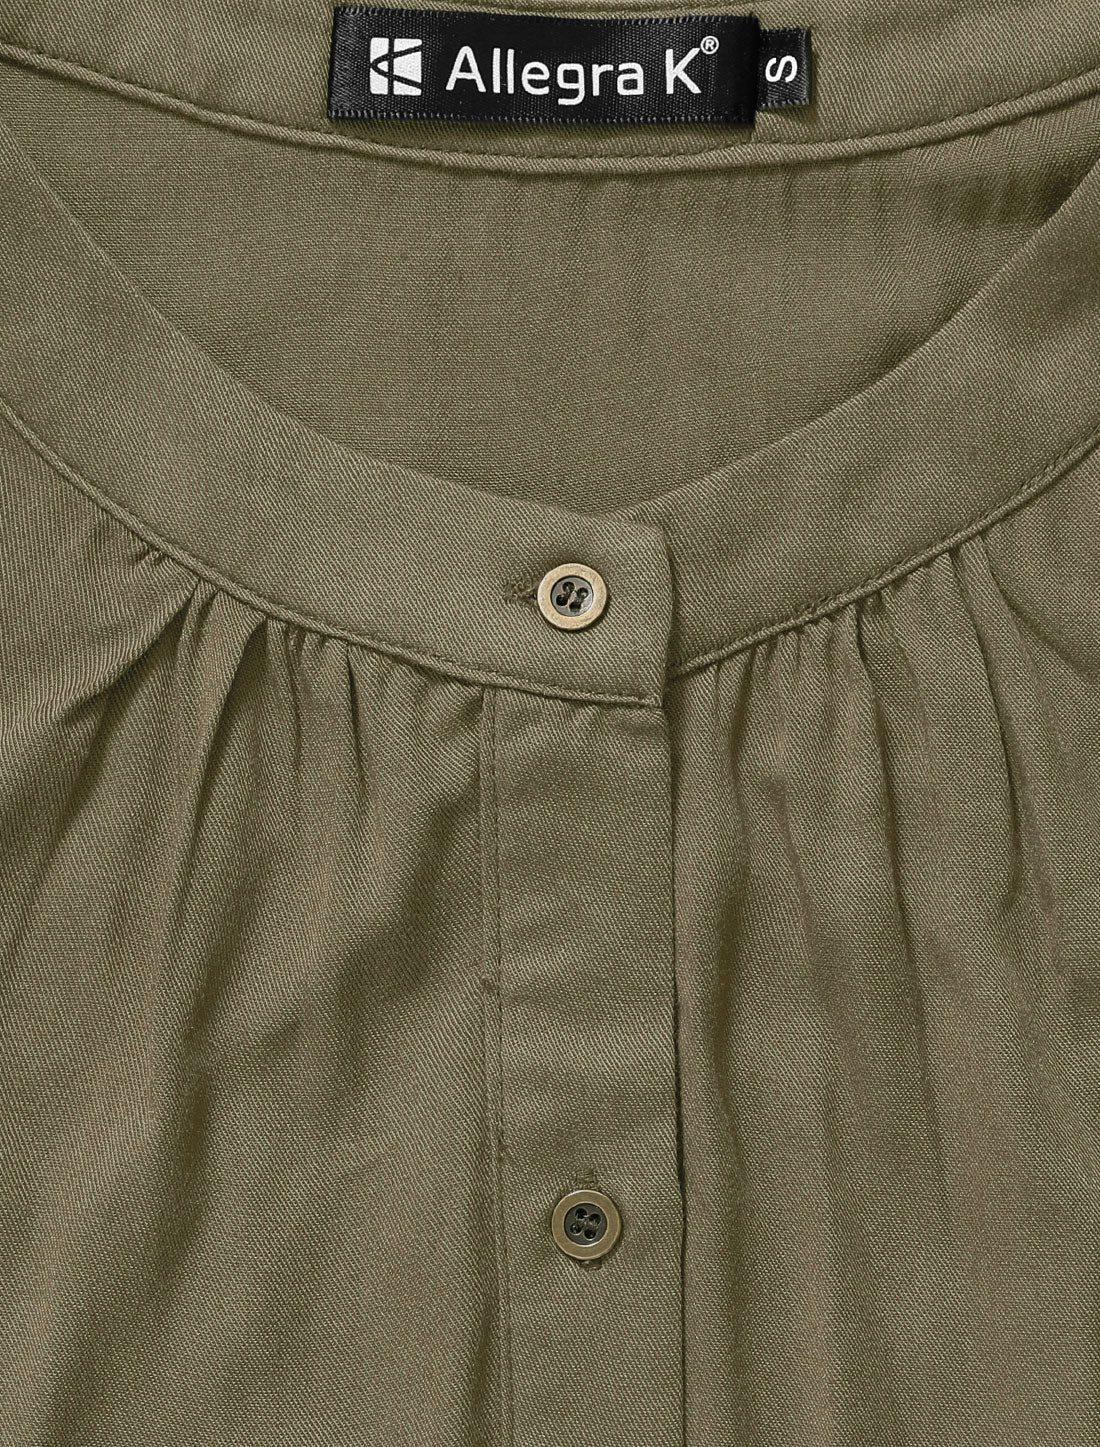 Allegra K Sleeveless Button Down Crew Neck Above Knee Belted Vintage Shirtdress